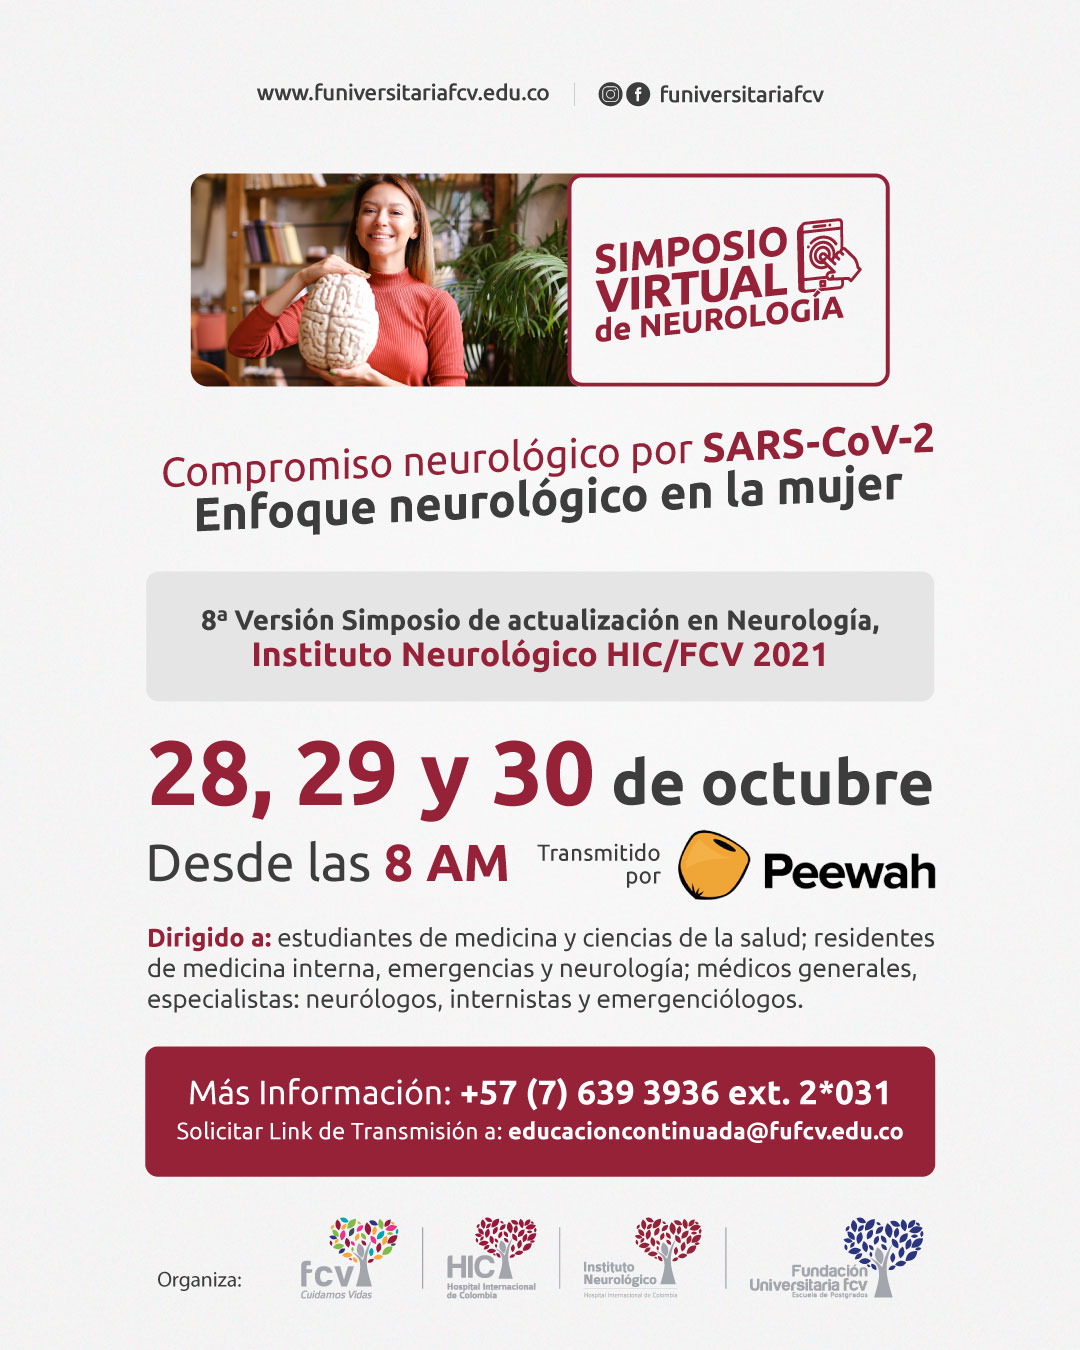 8a Versión SIMPOSIO DE ACTUALIZACIÓN EN NEUROLOGIA, INSTITUTO NEUROLÓGICO HIC/FCV 2021 “Compromiso neurológico por SARS-CoV2 Enfoque neurológico en la mujer